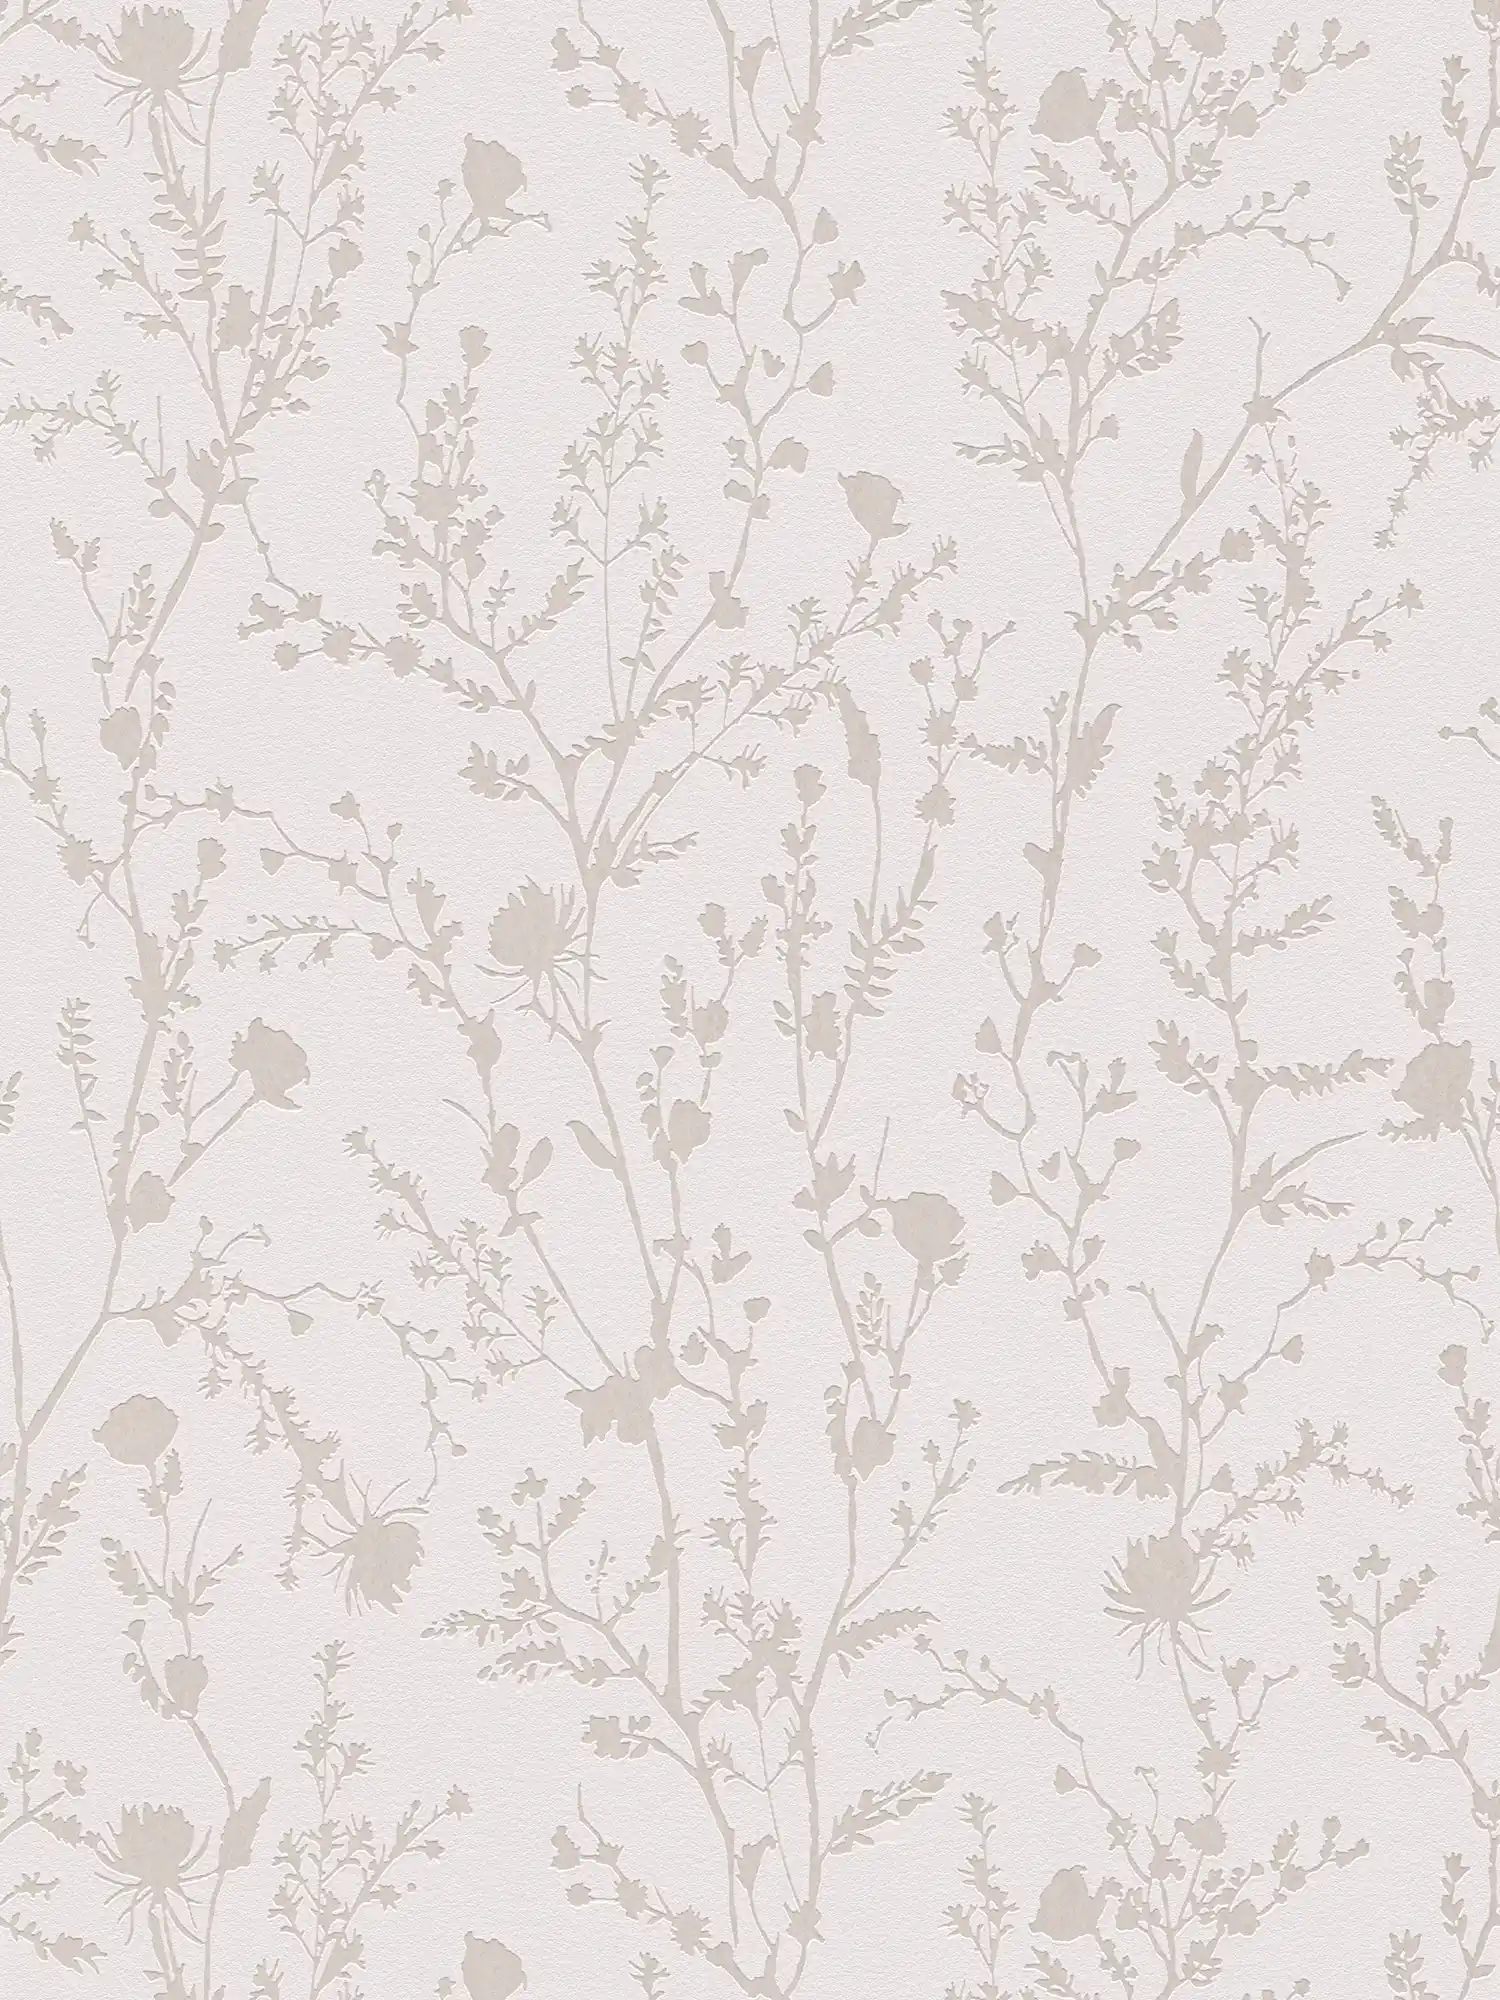 Papel pintado tejido-no tejido con un alegre motivo floral - rosa claro, gris claro
